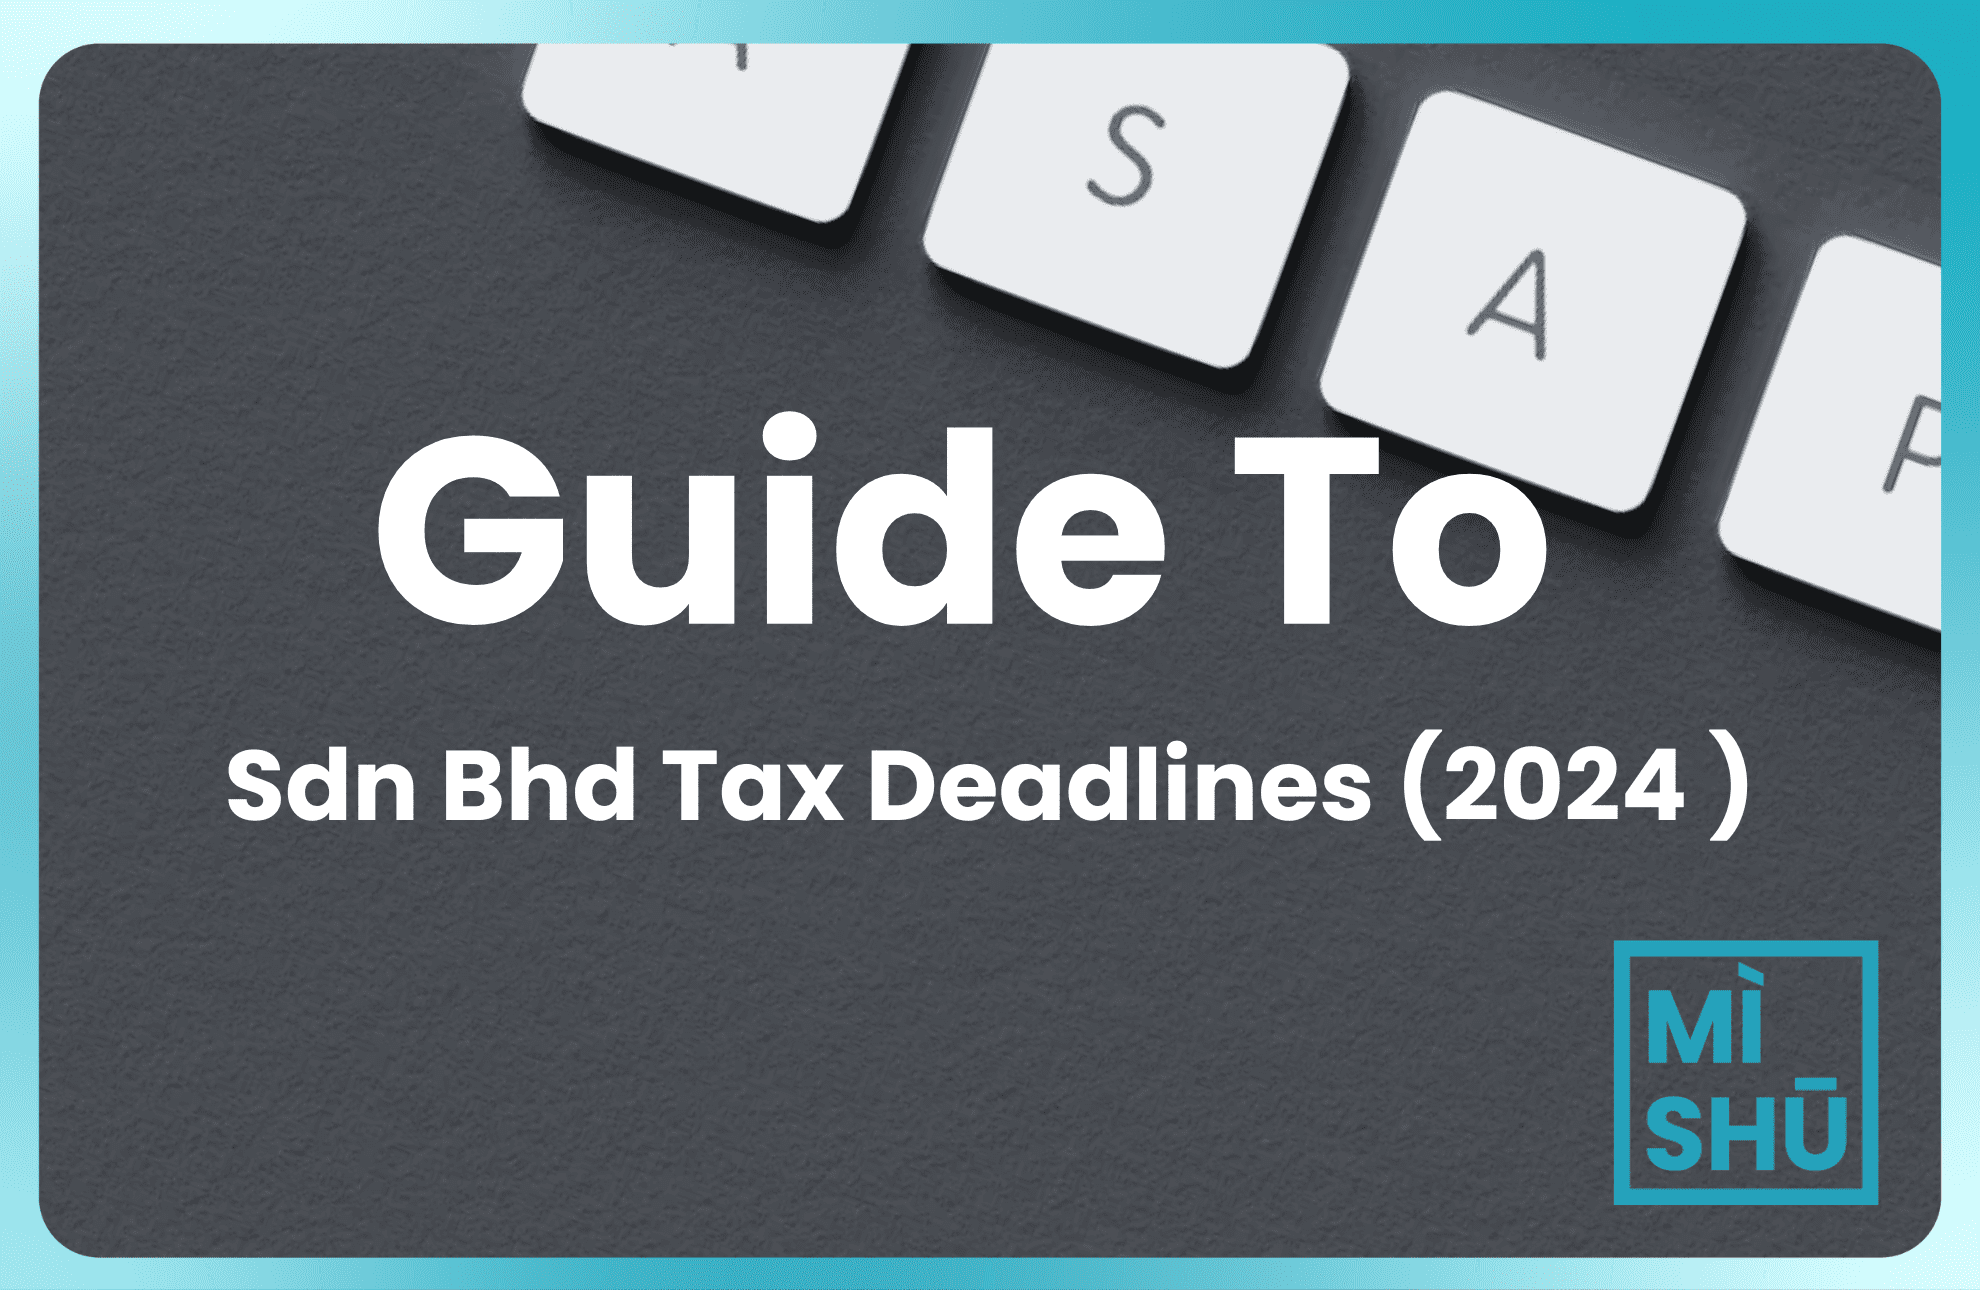 6 Sdn Bhd Tax Deadlines In 2024